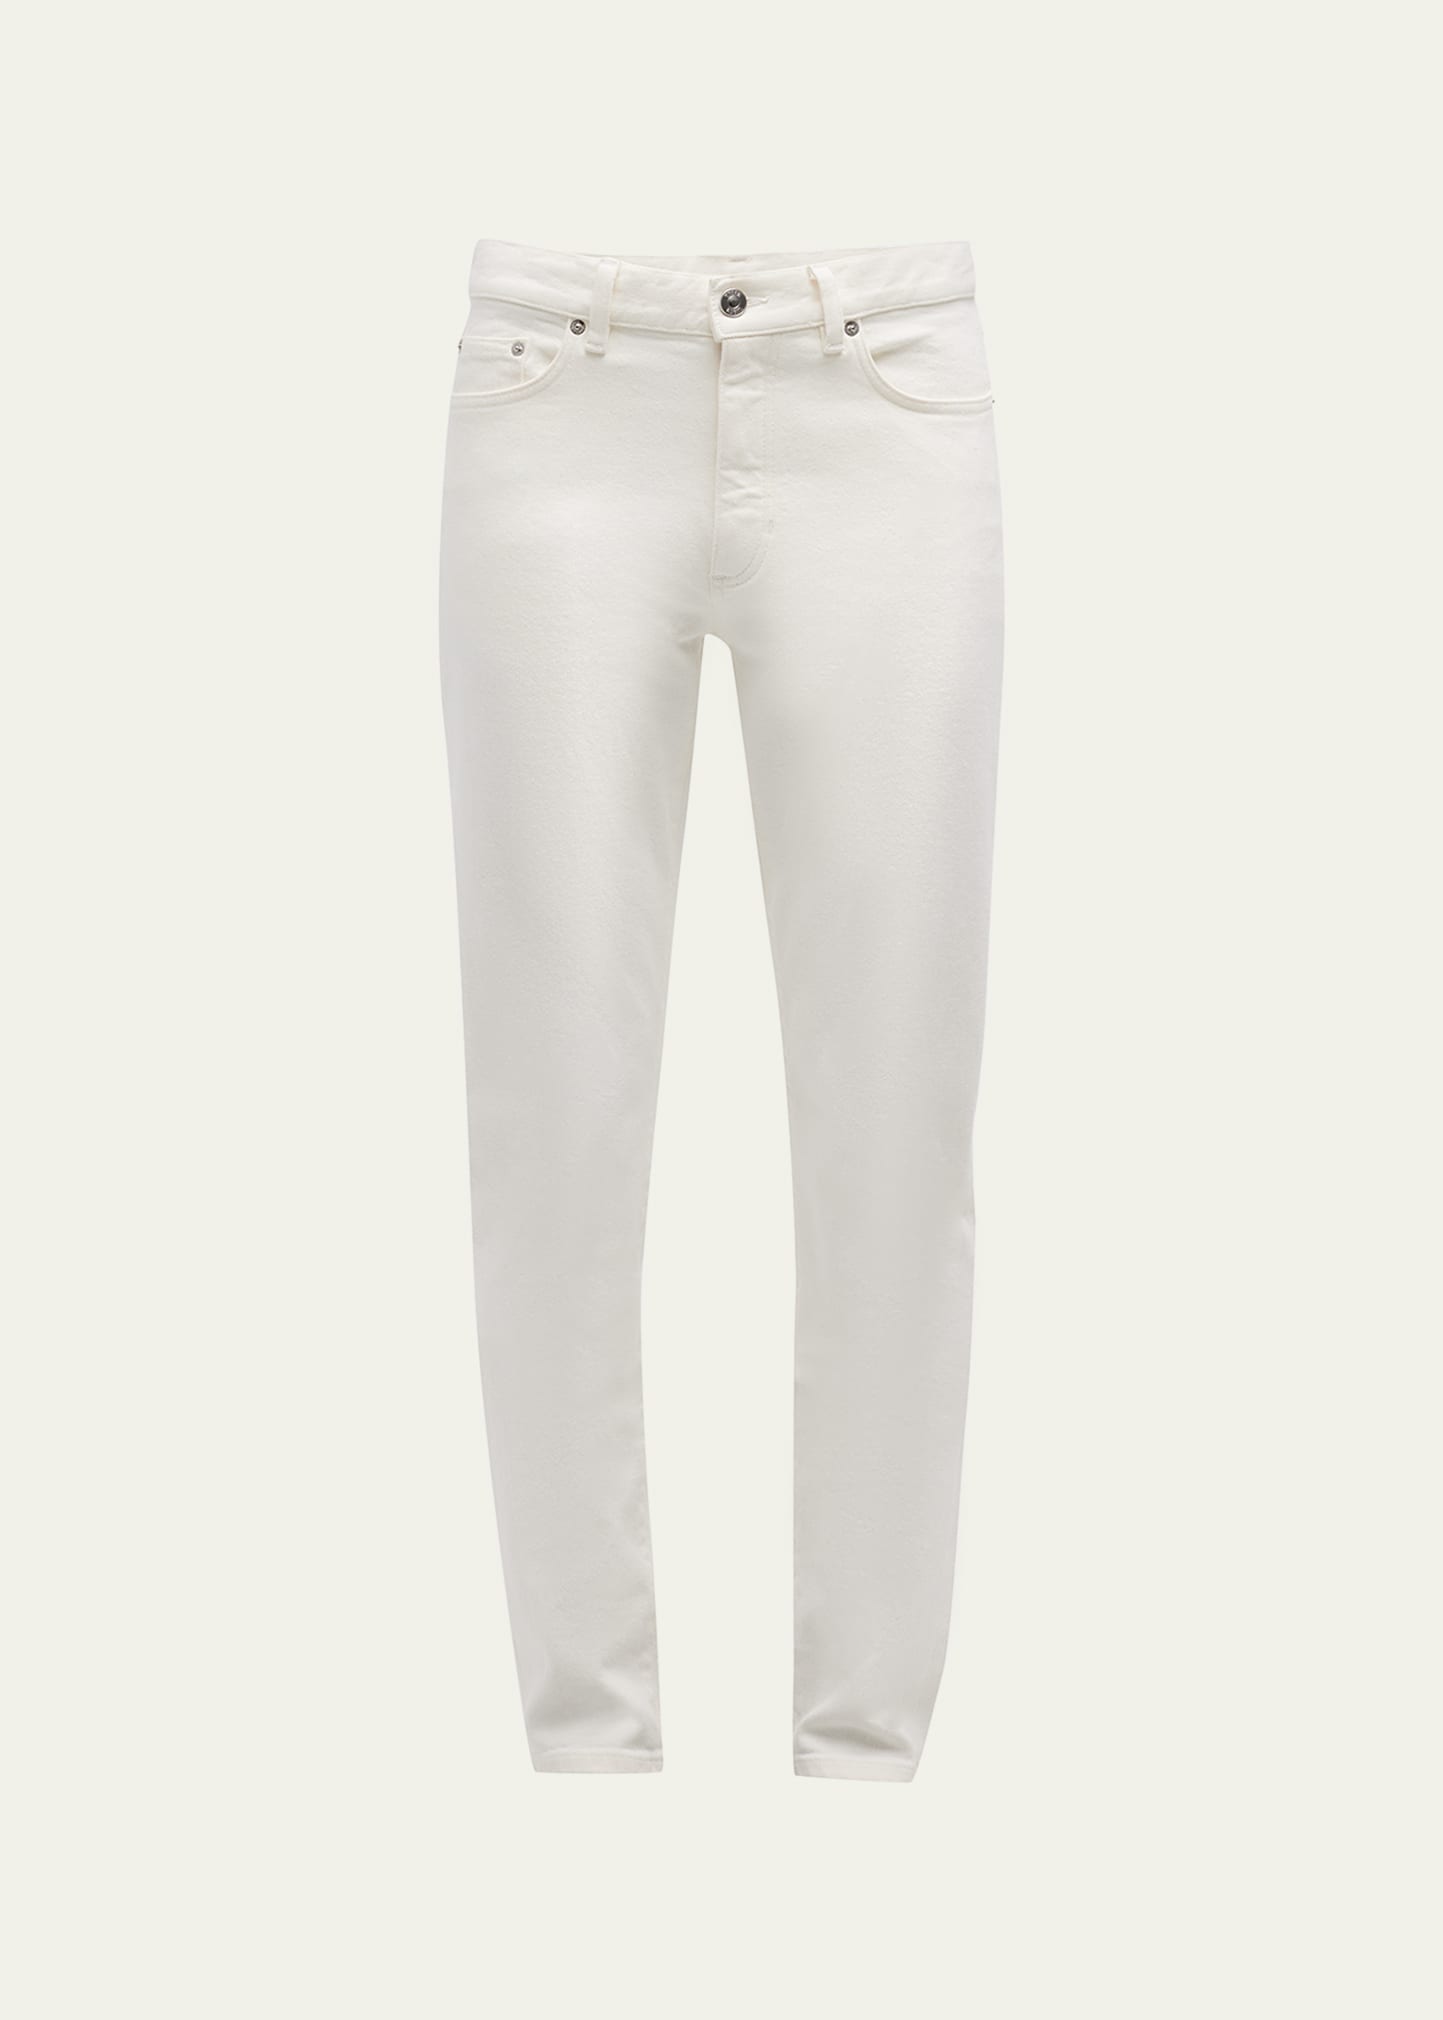 Zegna Men's 5-pocket Solid Denim Jeans In White Solid